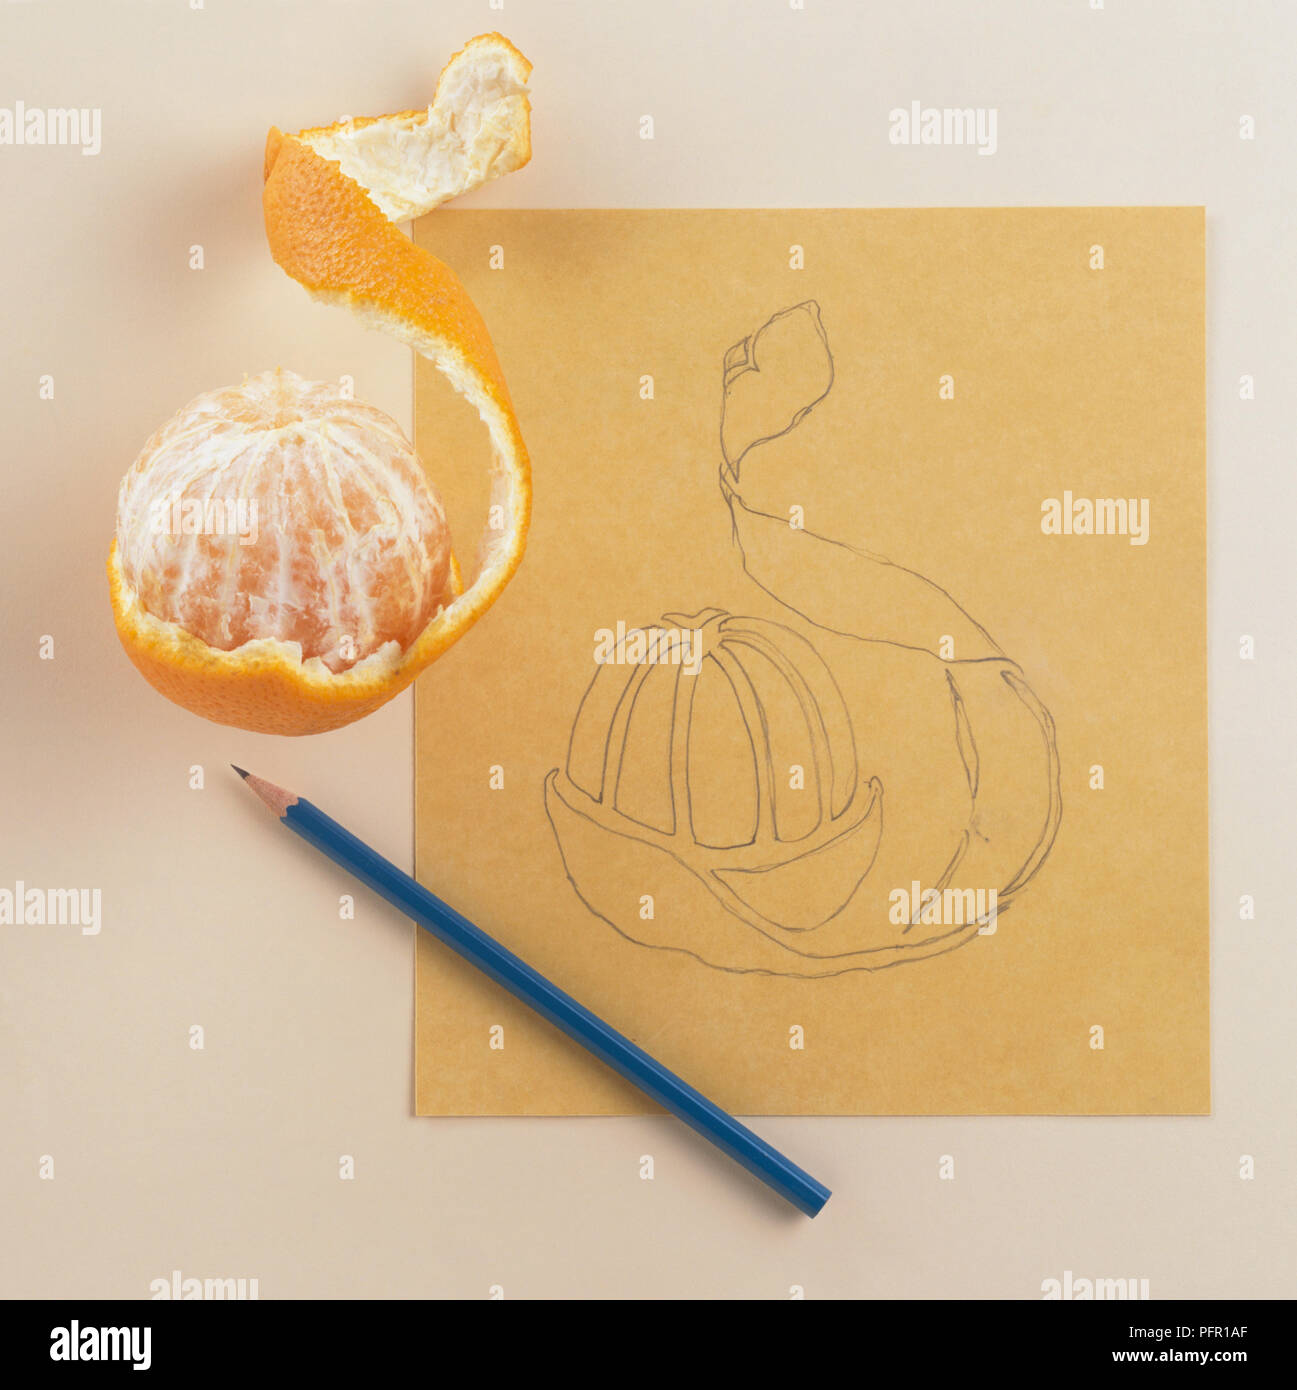 Bleistiftzeichnung einer Orange, neben eine geschälte Orange und einem Stift. Stockfoto